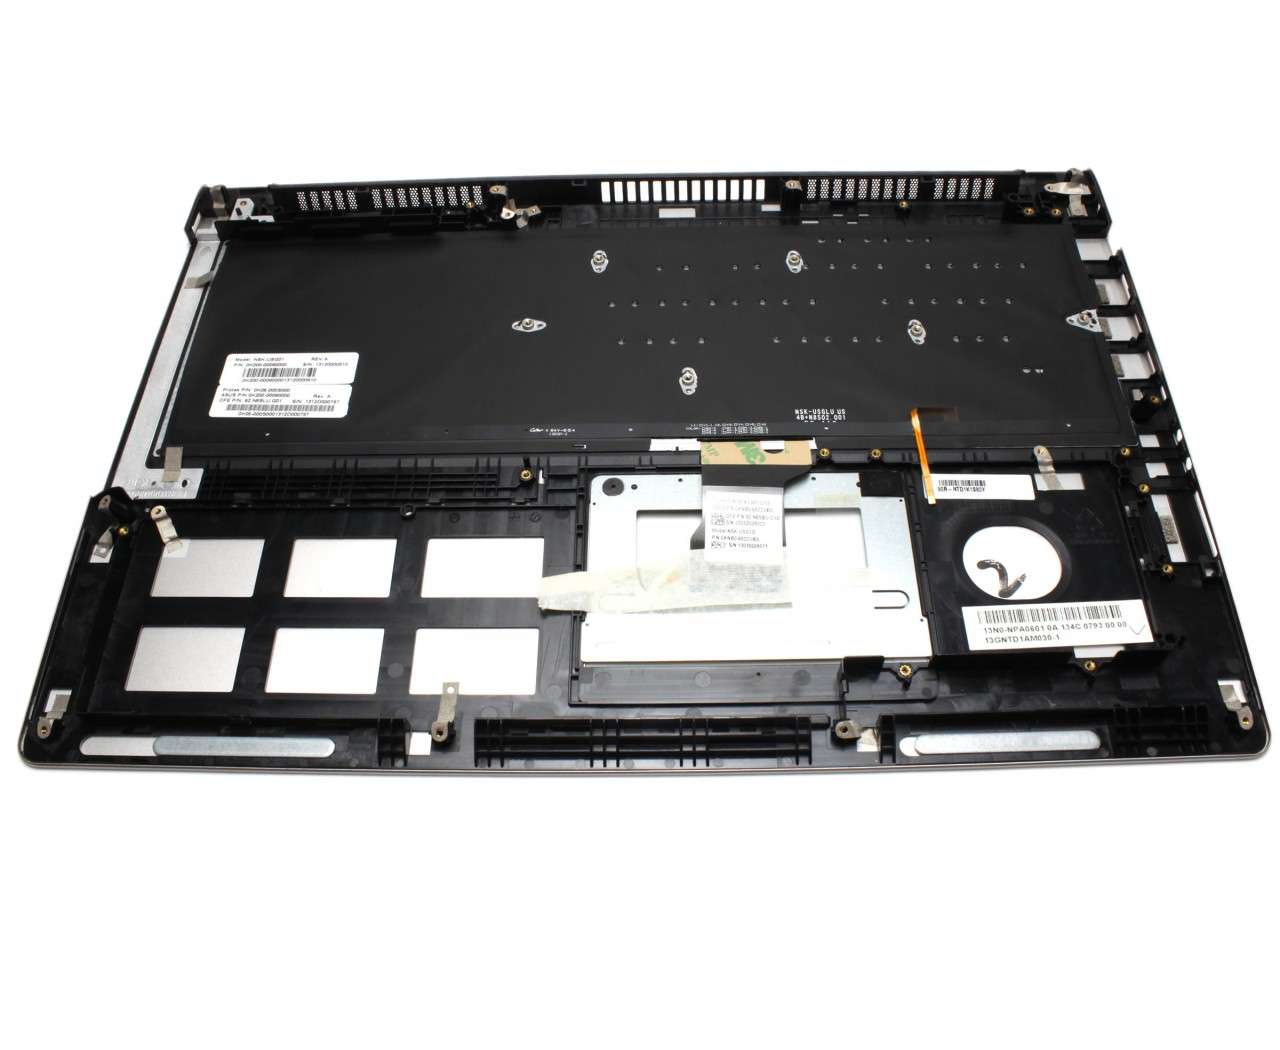 Tastatura Asus 0K200-00080000 neagra cu Palmrest argintiu iluminata backlit